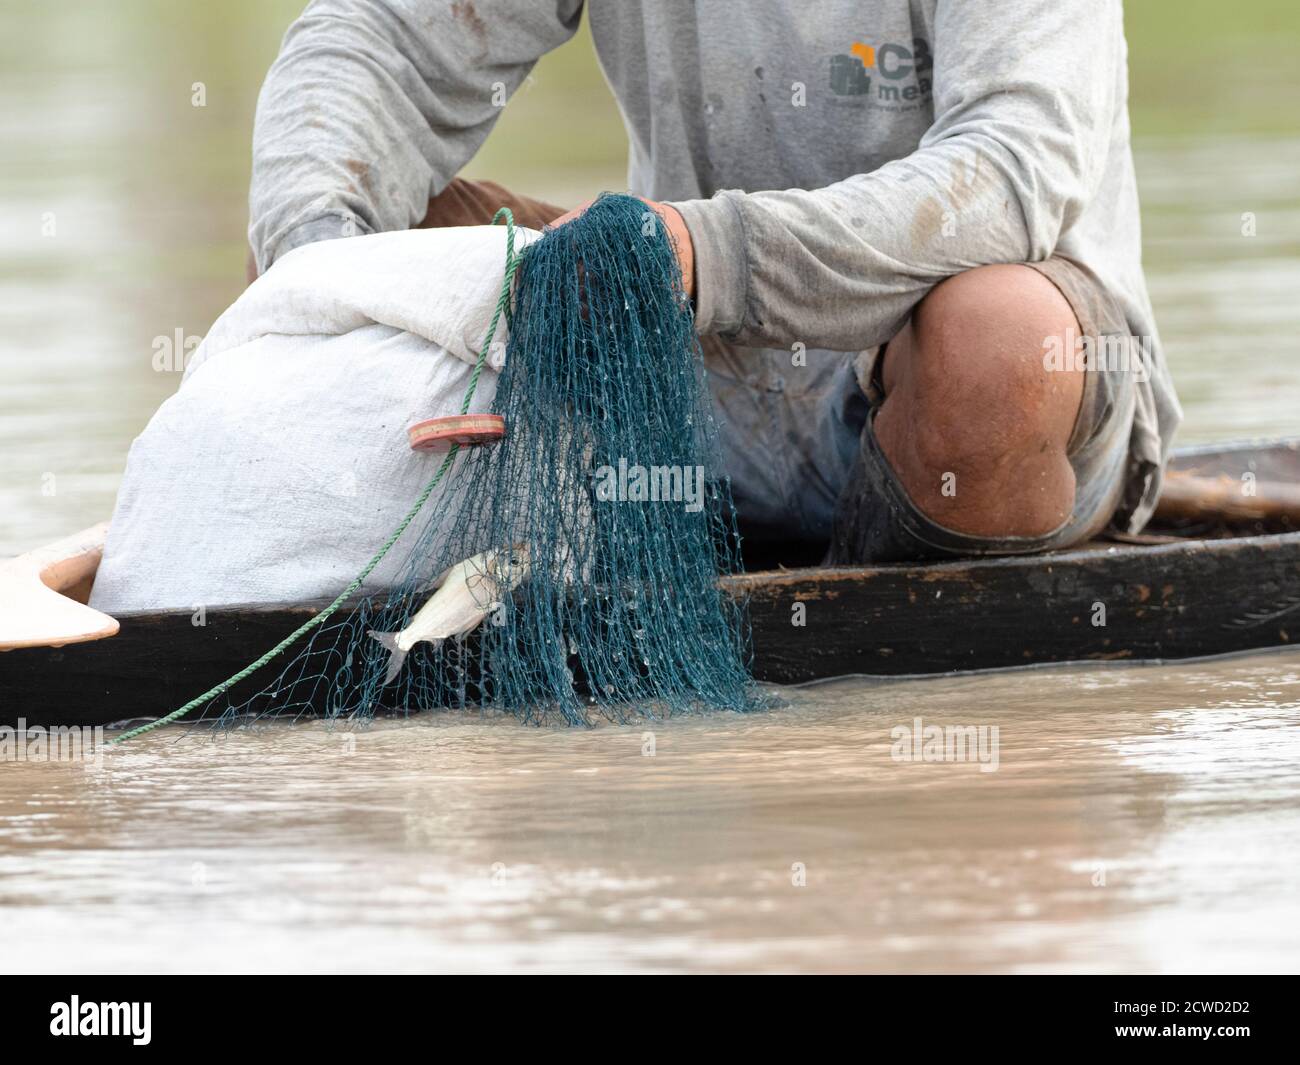 Fisherman gathering small fish by net on Oxbow lake Atun Poza, Iquitos, Peru. Stock Photo